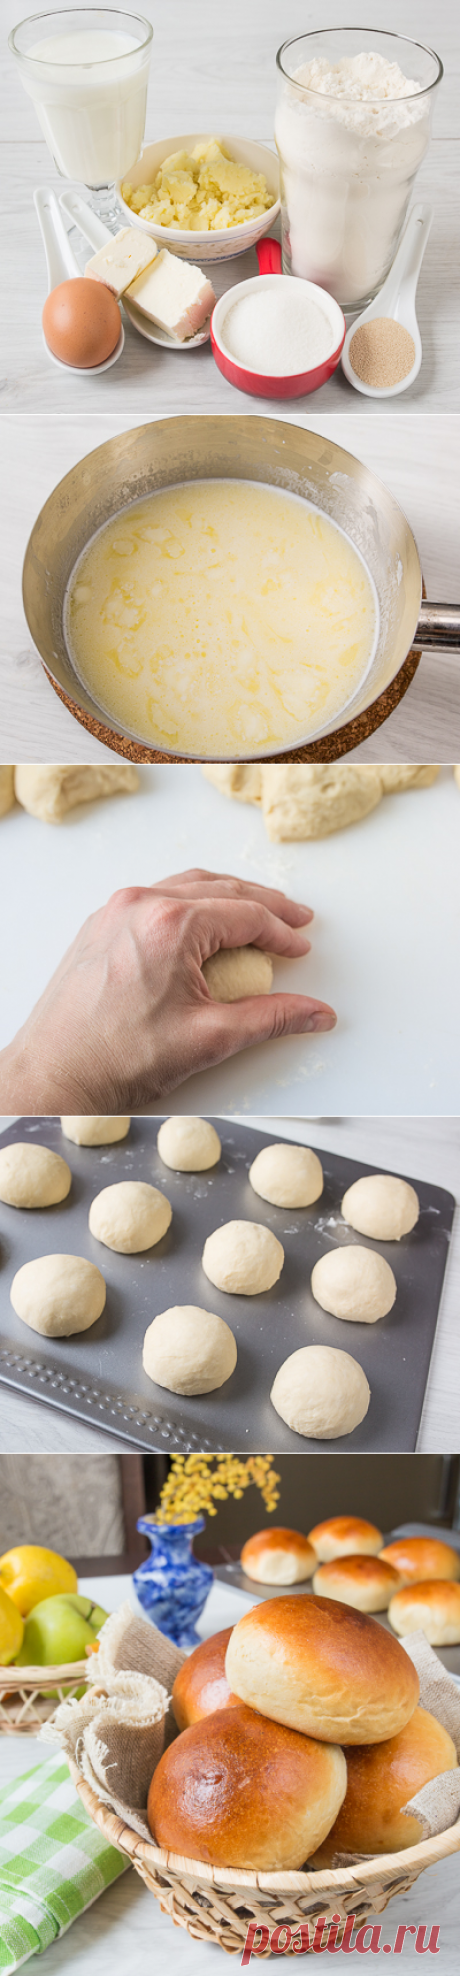 Картофельные булочки - Пошаговый рецепт с фото | Выпечка | Вкусный блог - рецепты под настроение